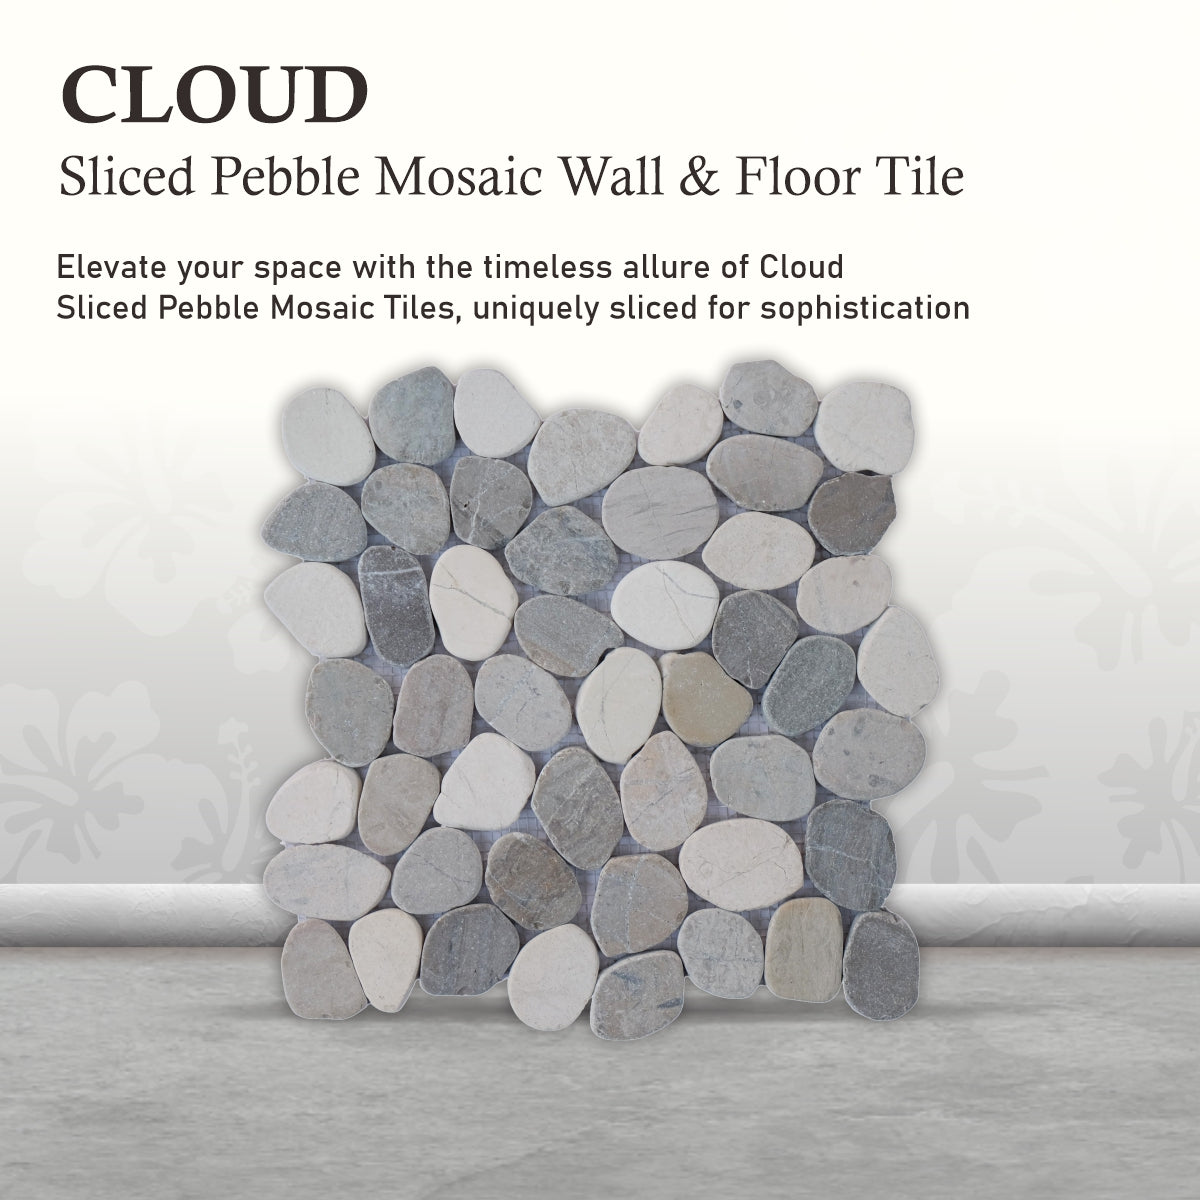 Pebble Mosaic Cloud Tiles, Cloud Sliced Pebble Mosaic Wall Floor Tile